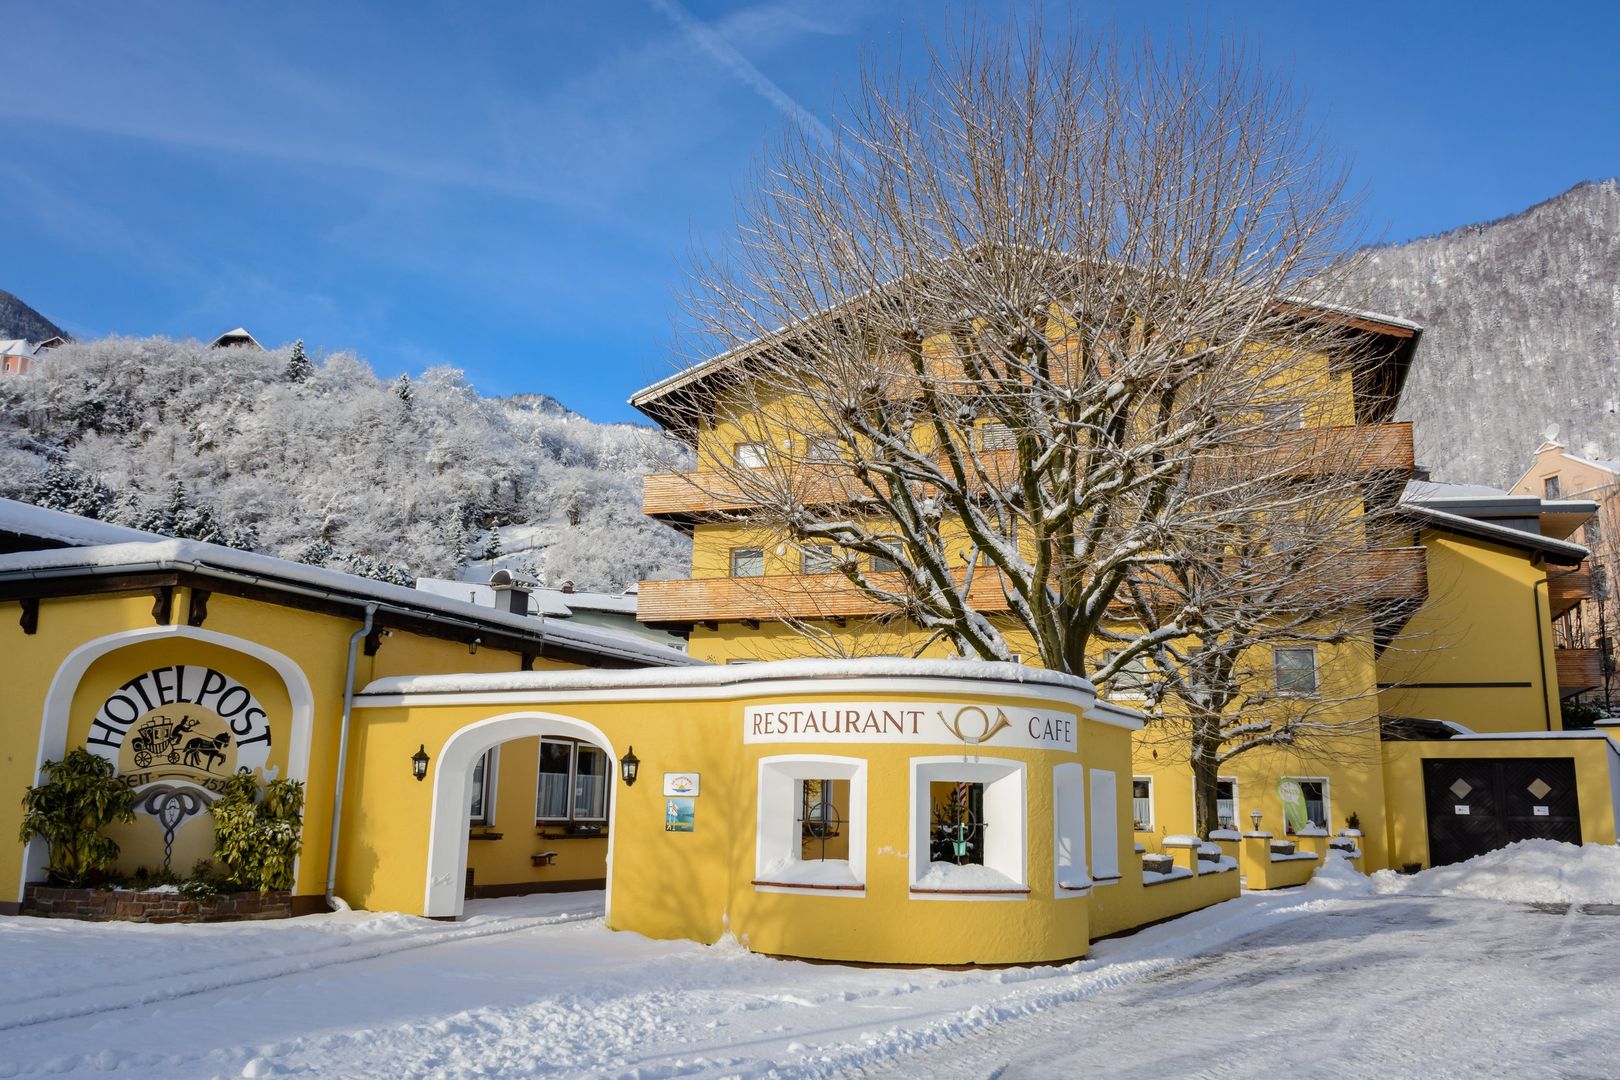 Meer info over Landhotel Post Ebensee  bij Wintertrex